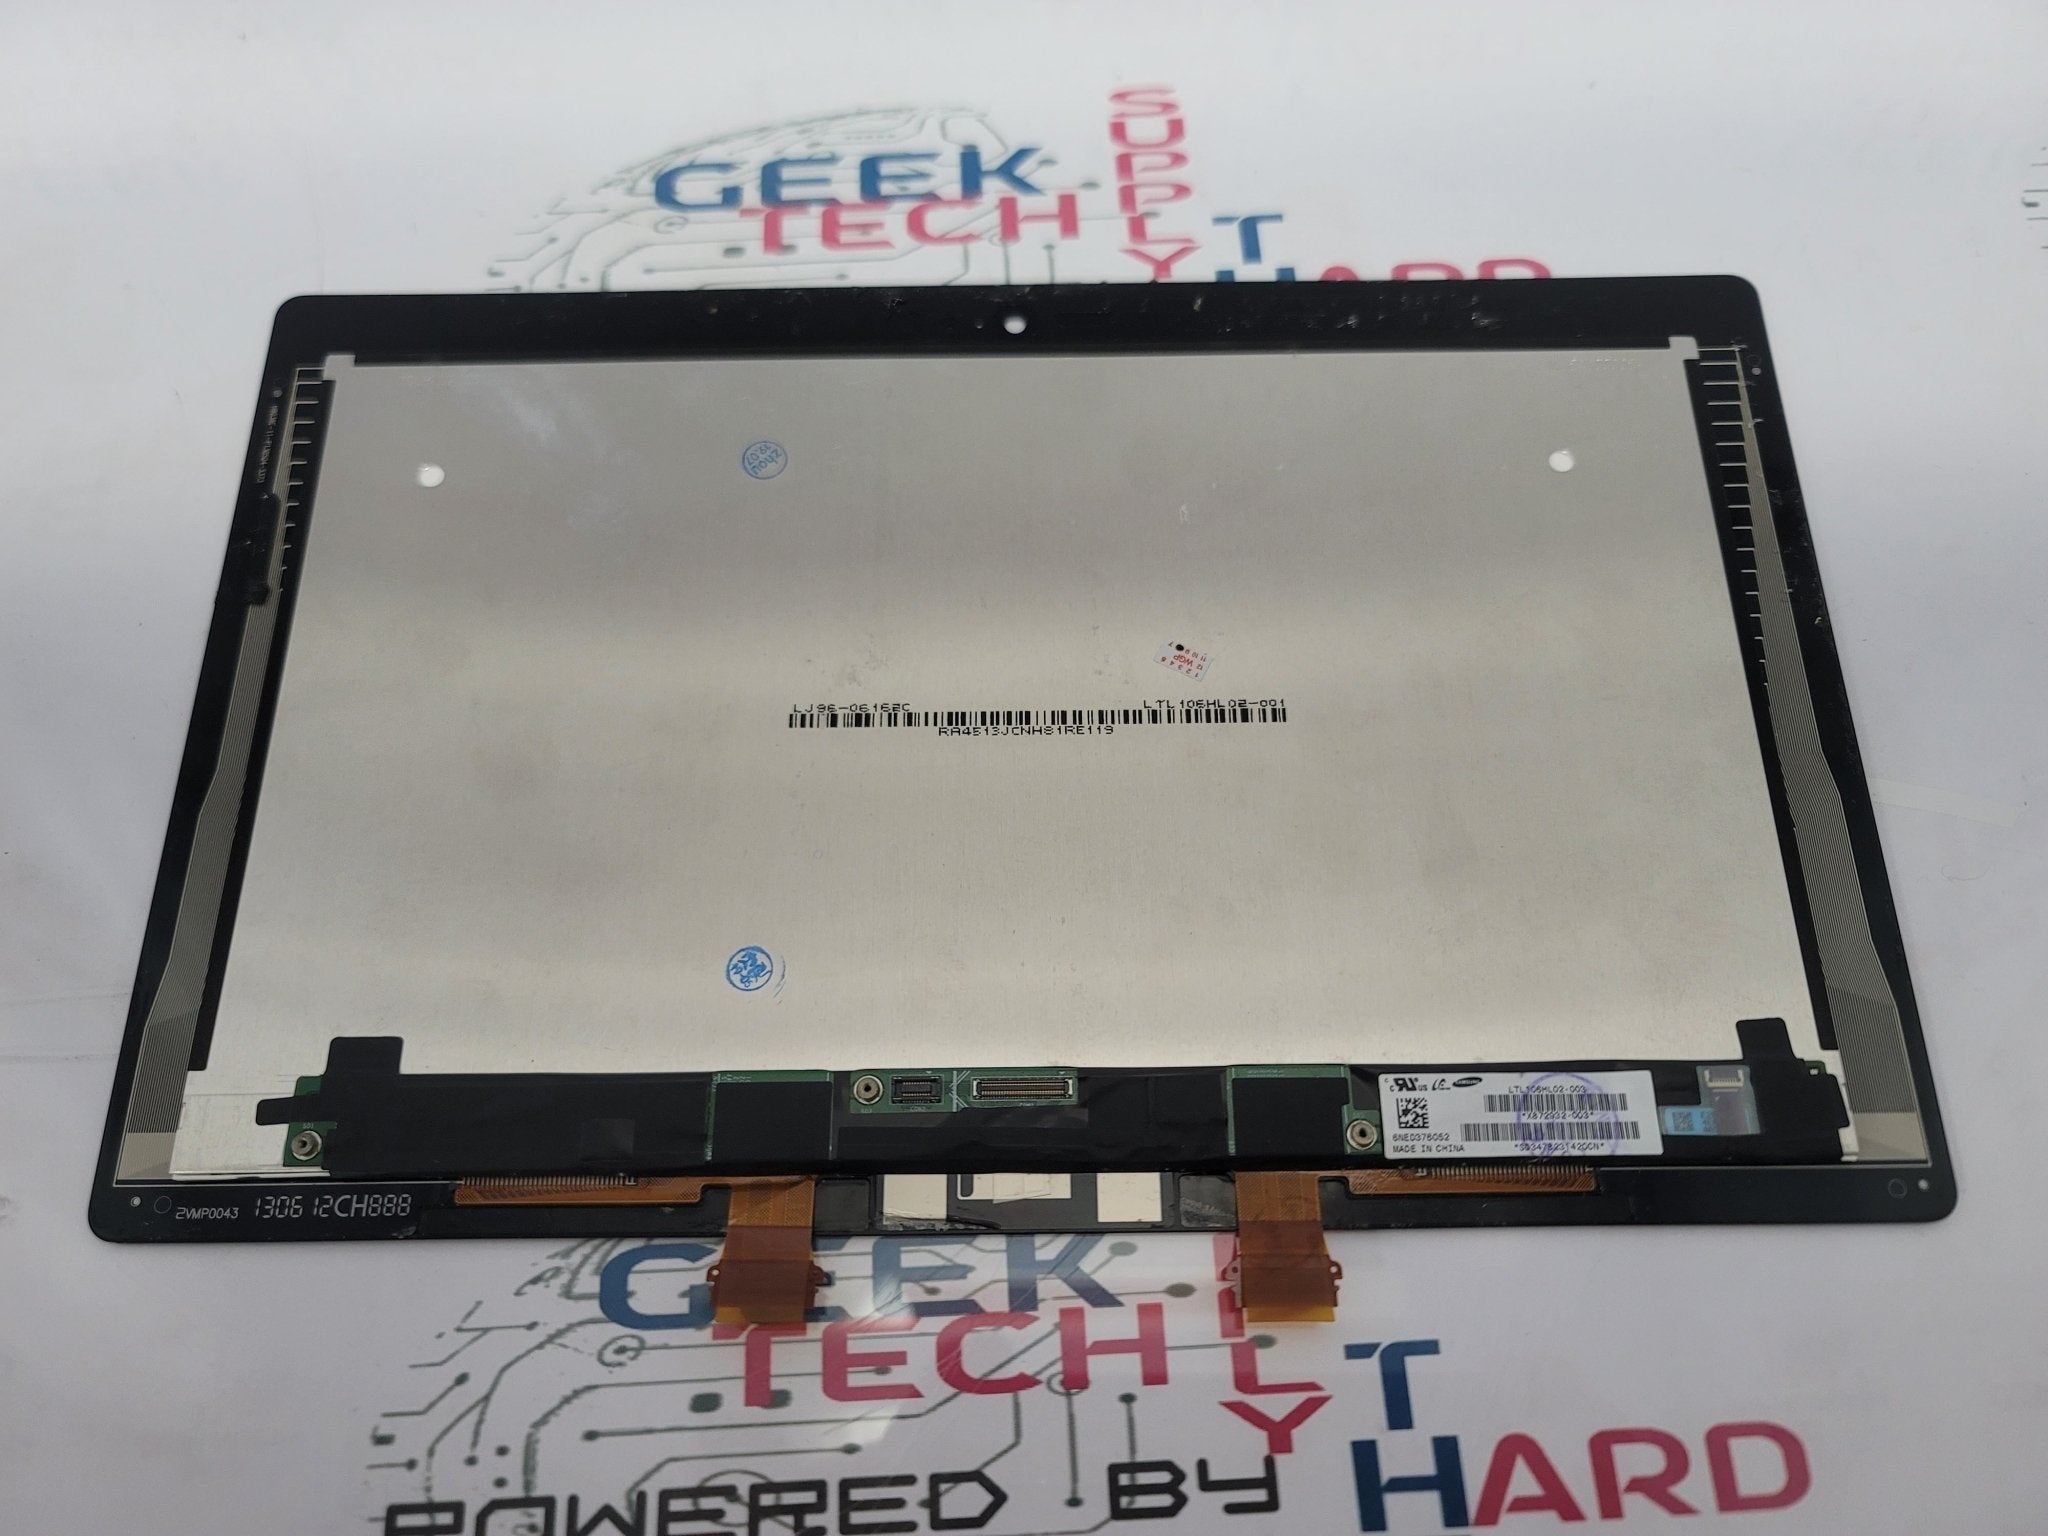 Windows Surface RT LCD Assembly LTL106HL02-003 | B Grade - Geek Tech